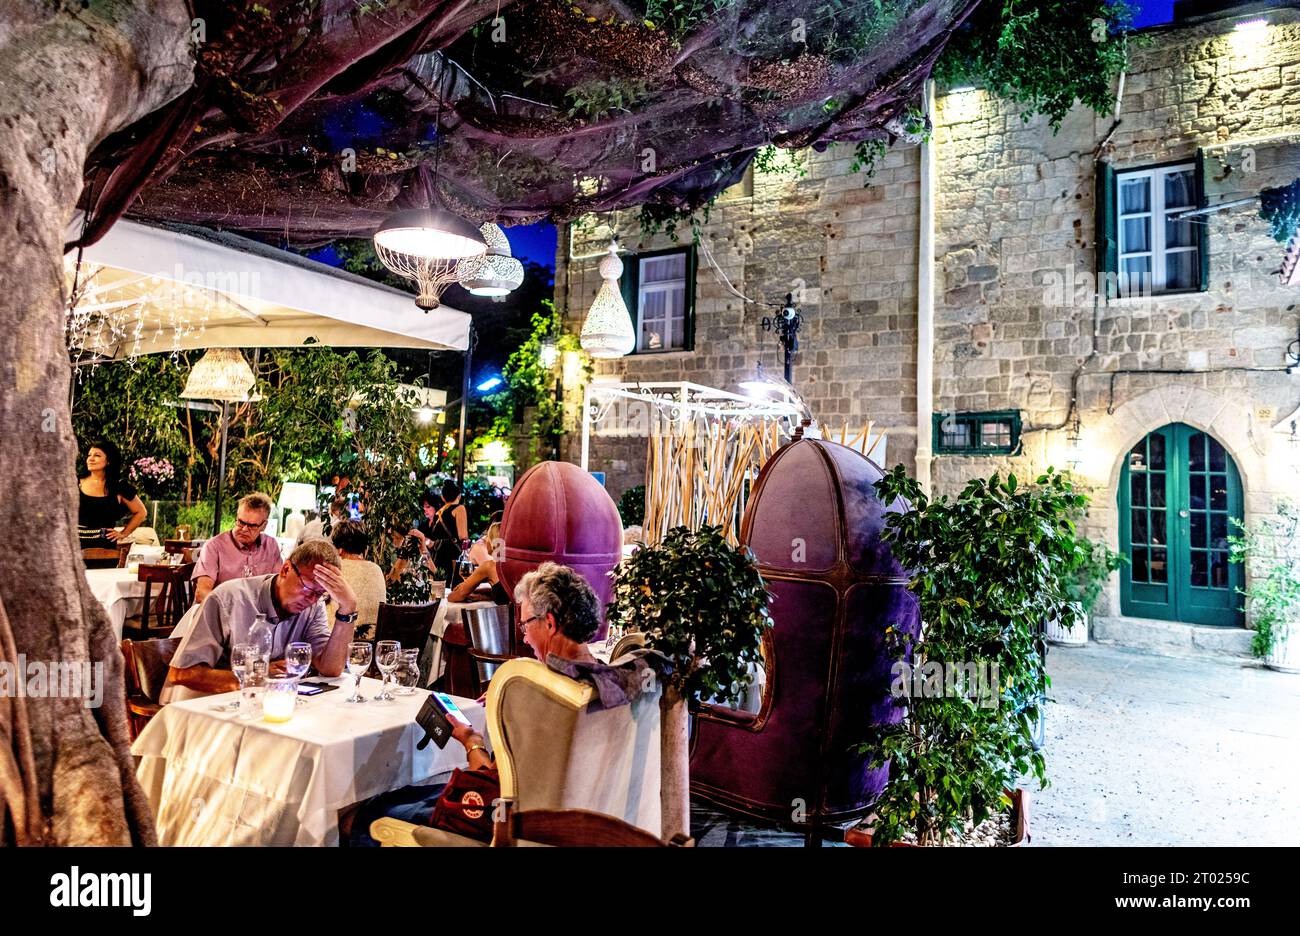 Taverna at Night Rodi, città vecchia, Grecia, Isole greche Foto Stock